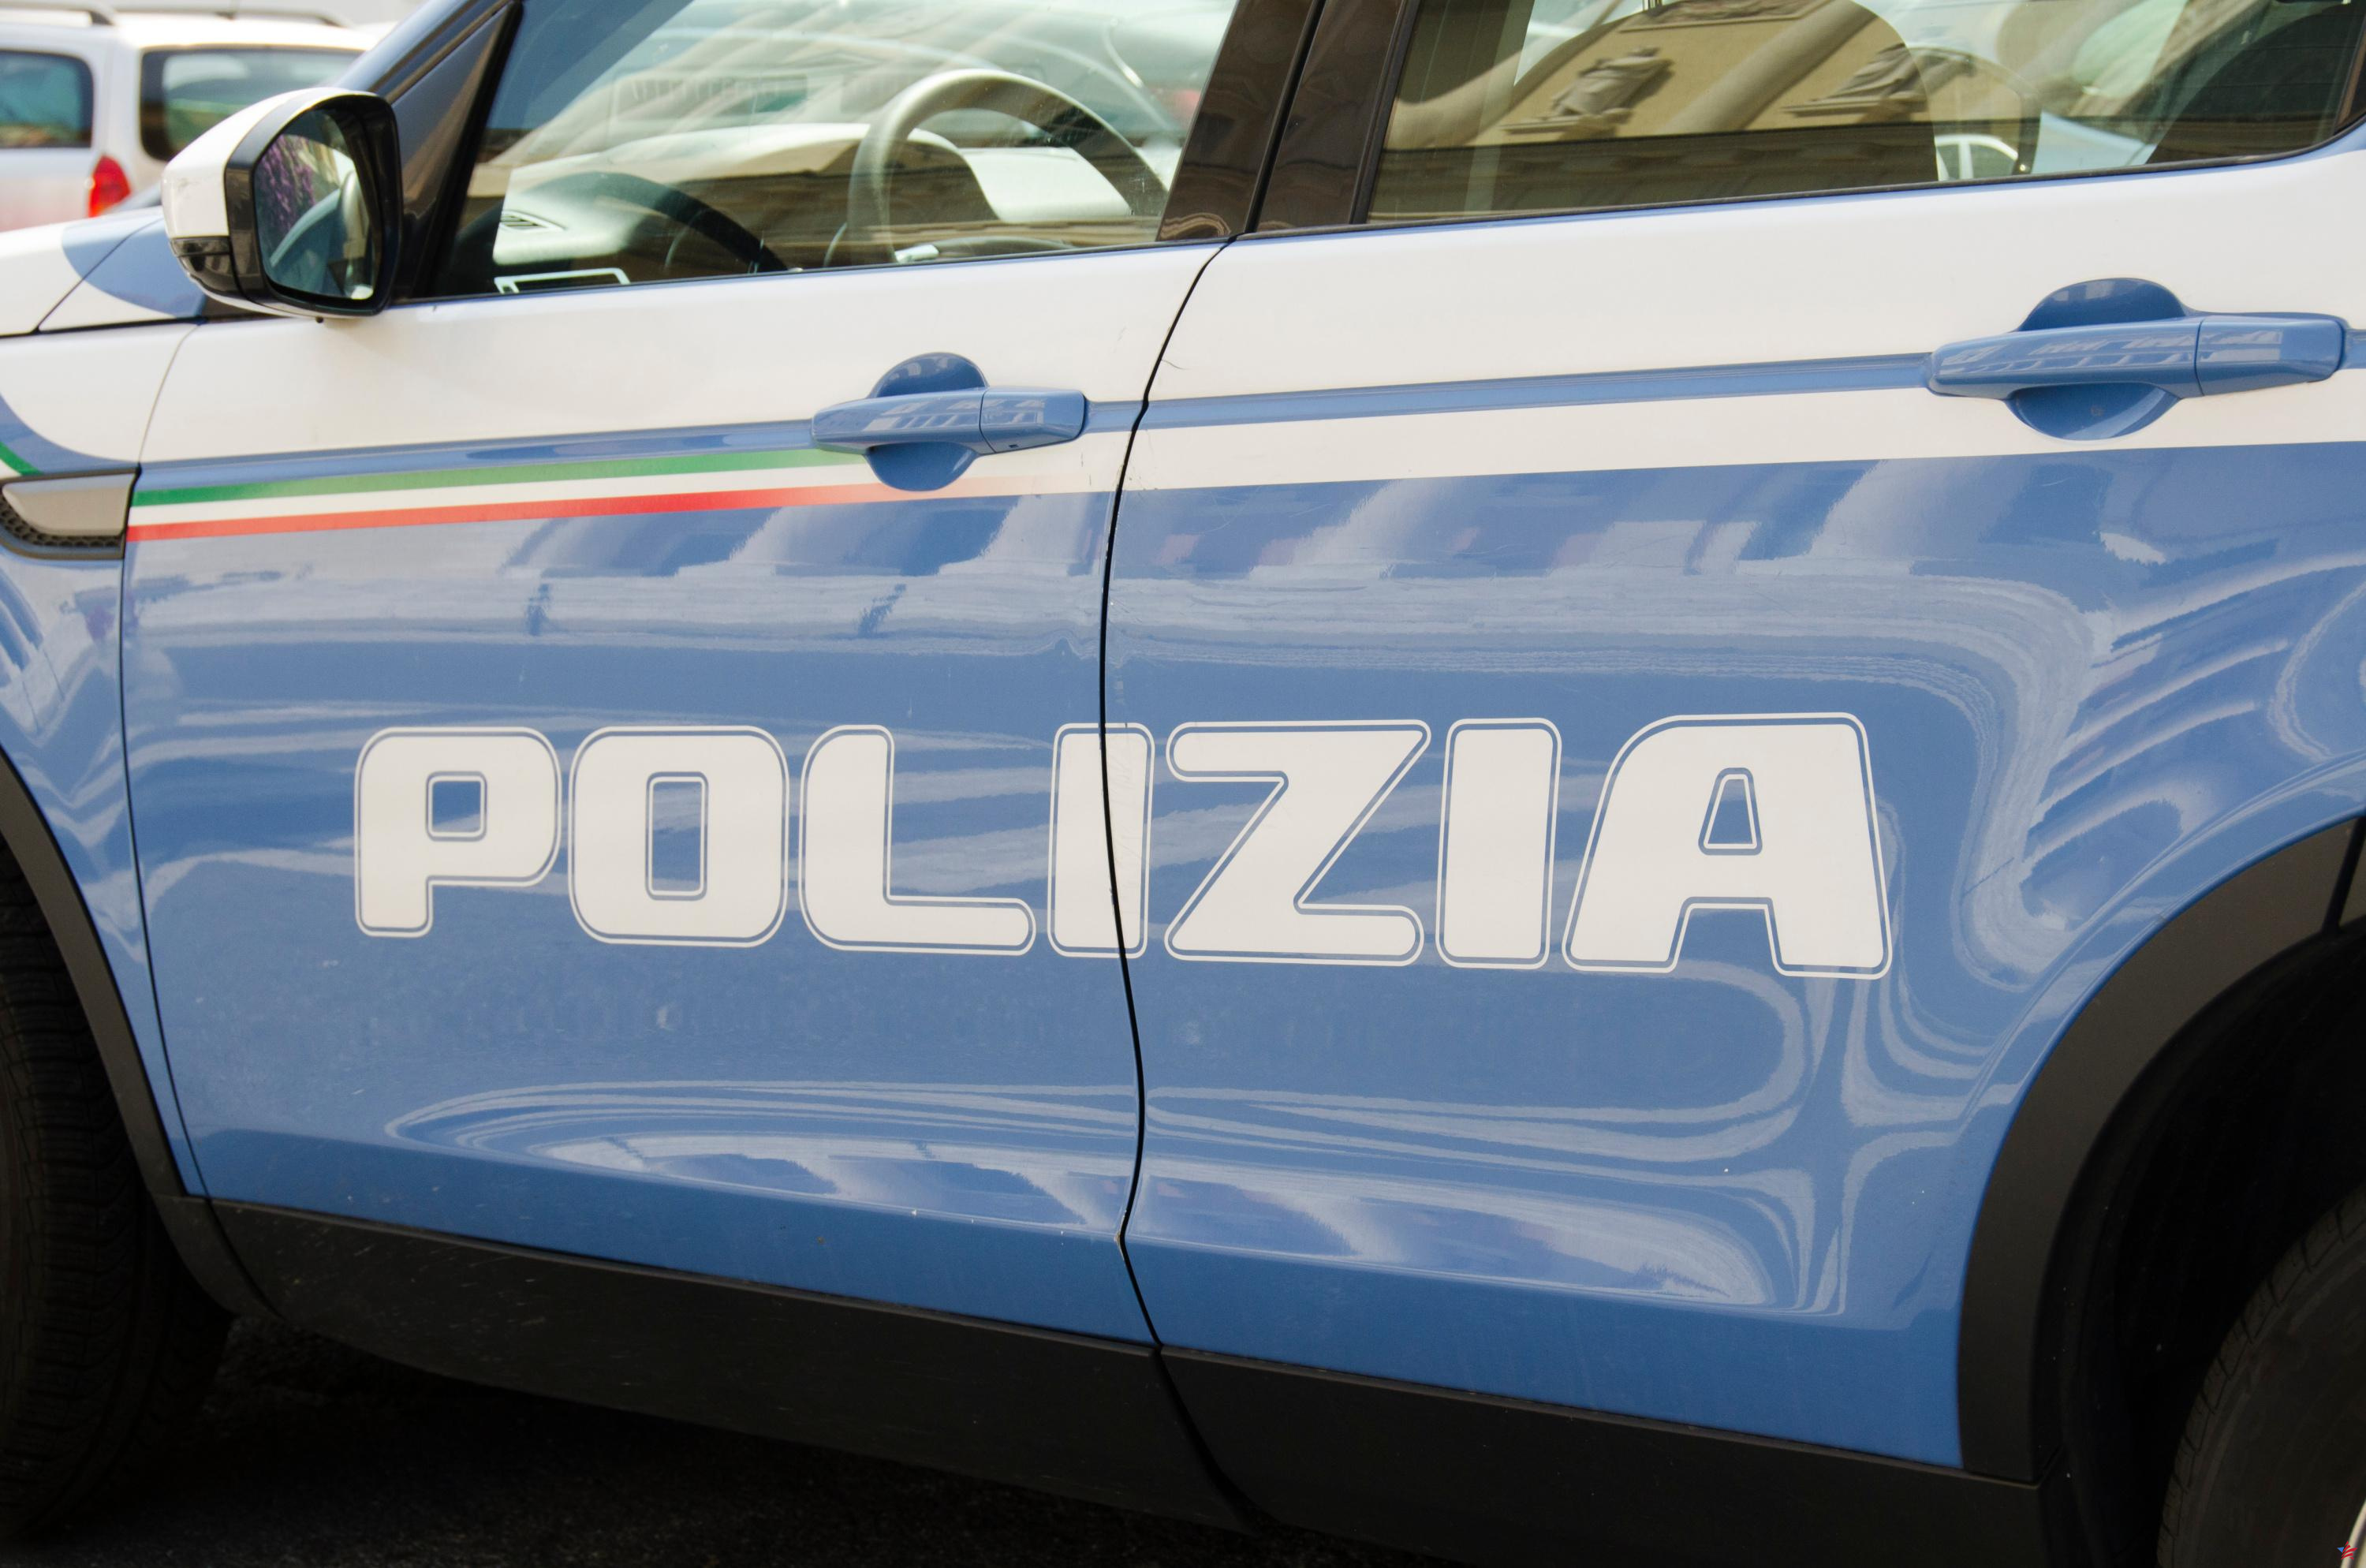 Mujer francesa asesinada a puñaladas en Italia: la justicia italiana favorece la premeditación